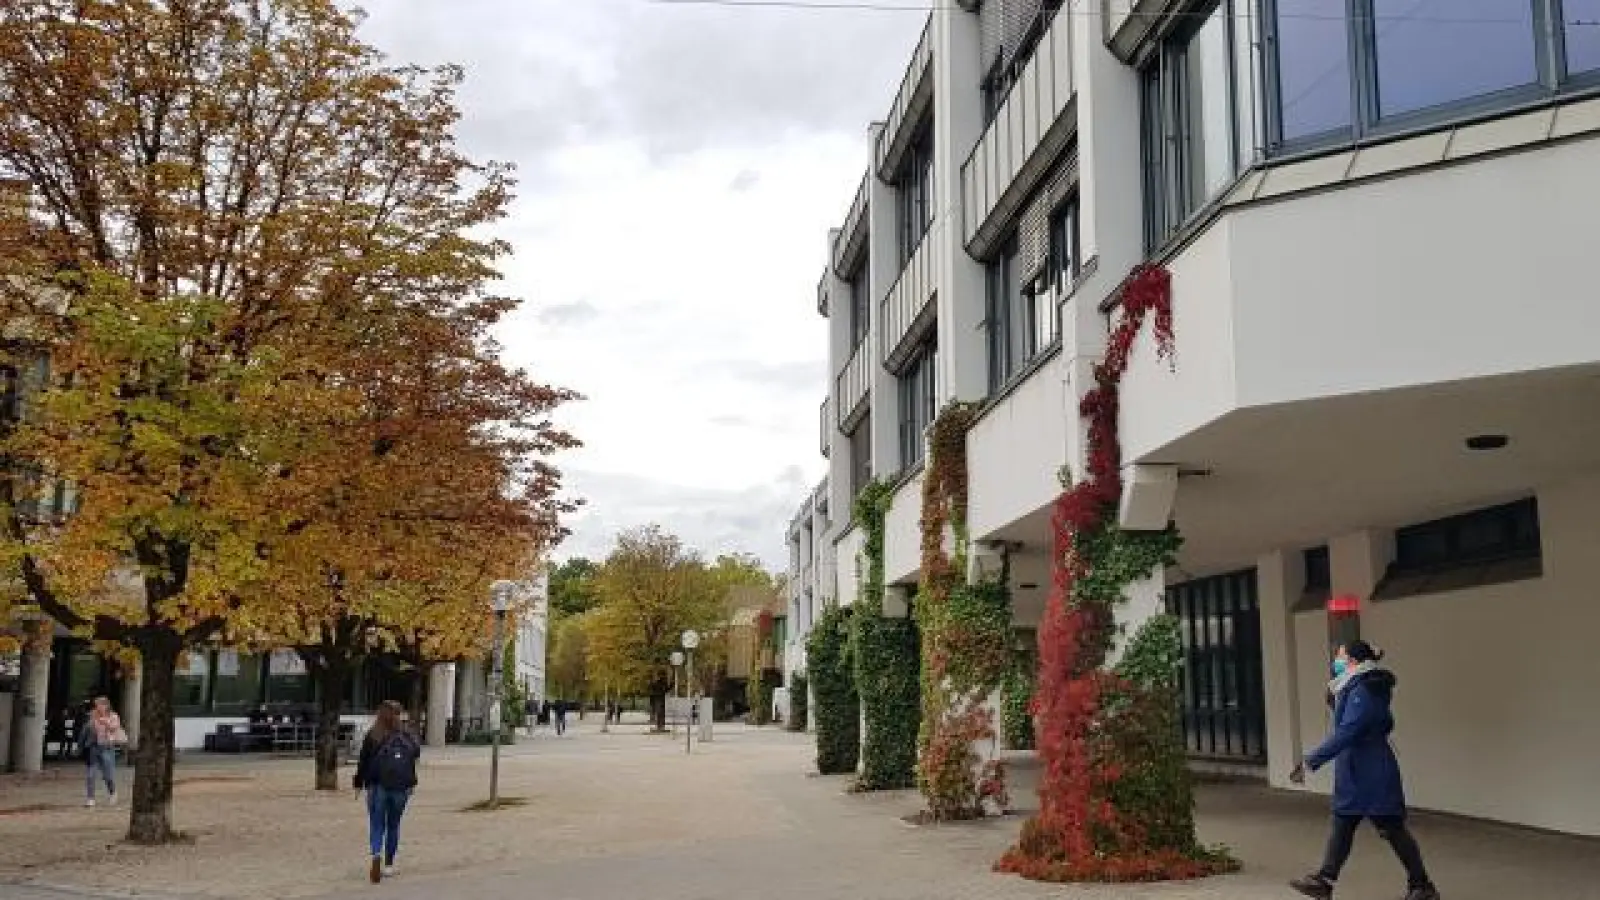 Am Montag sind im Zuge des bundesweiten Campus-Streiktages auch die Mitarbeiter der Universität Augsburg aufgerufen, die Arbeit niederzulegen. (Foto: Martina Dieminger)